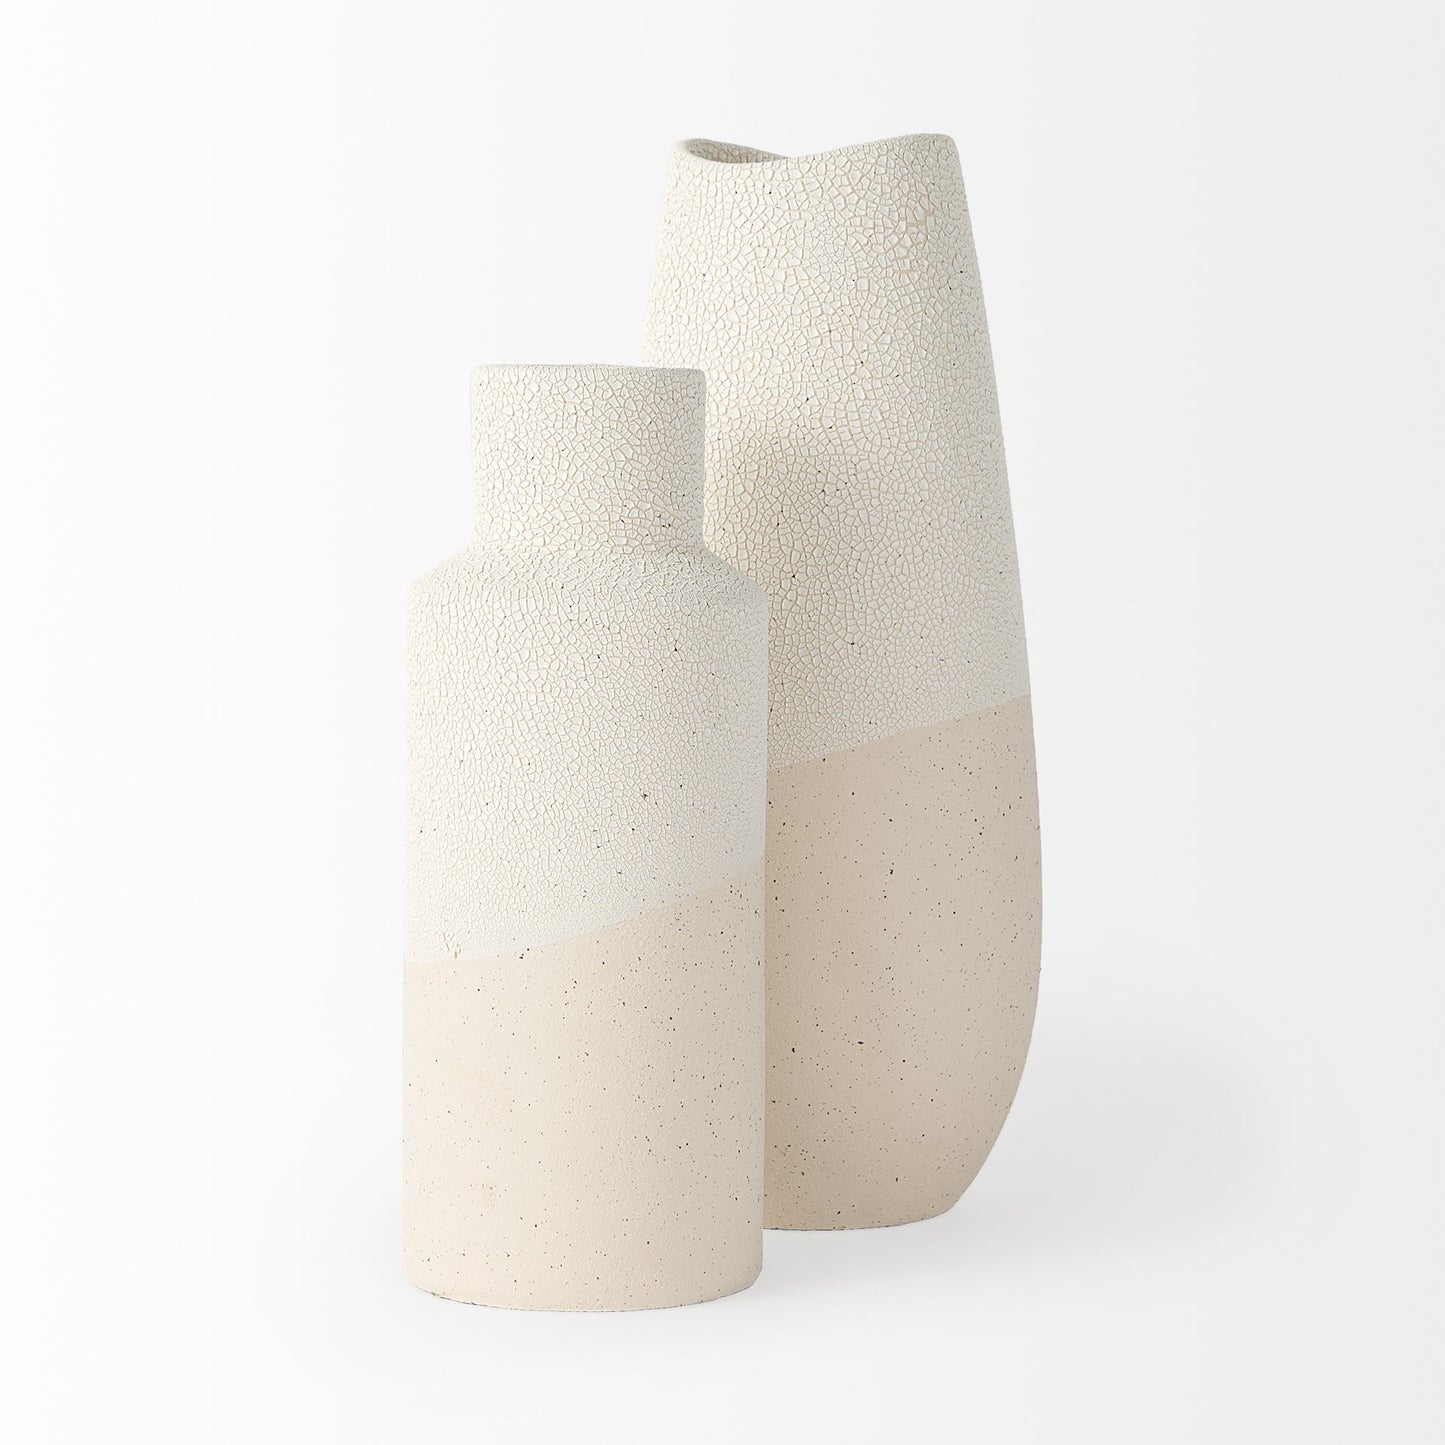 Blush Two Tone Organic Crackle Glaze Ceramic Vase-2